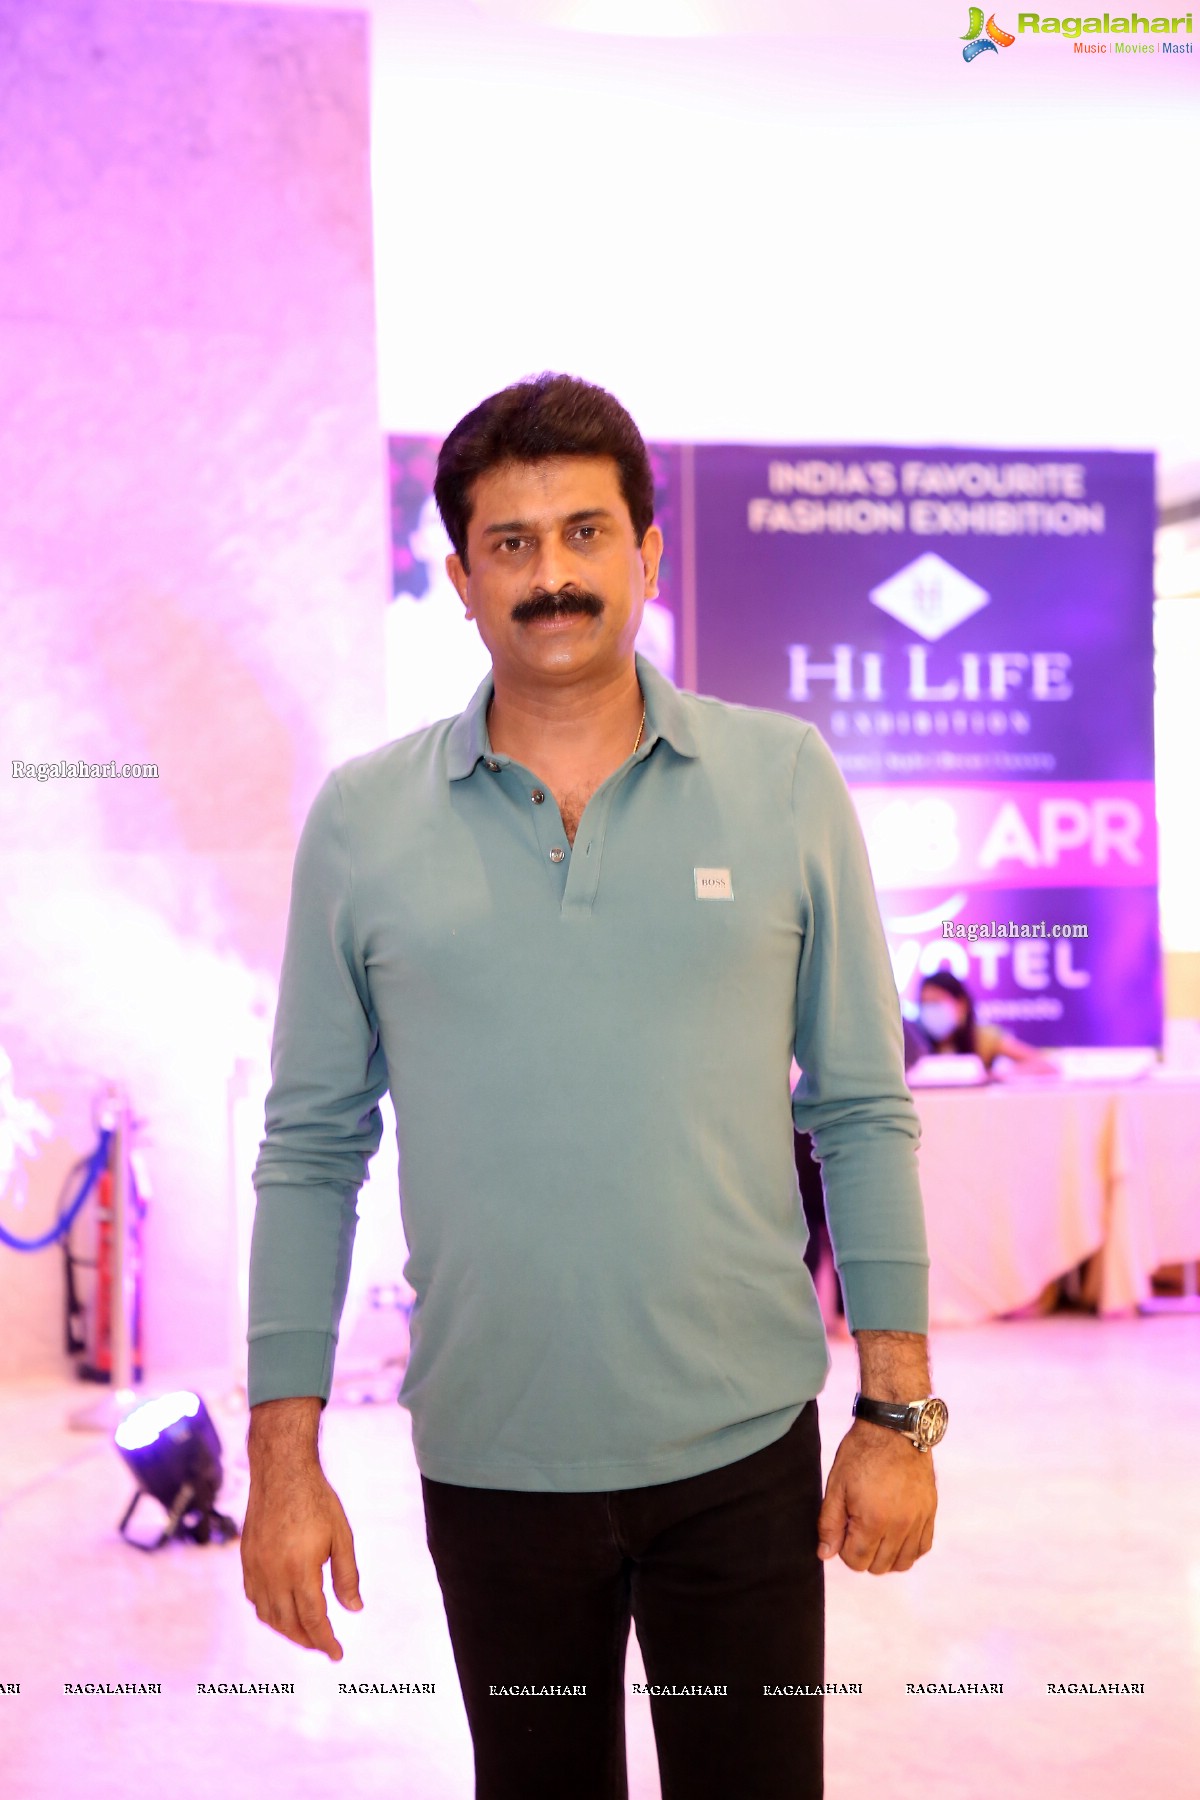 Hi Life Exhibition April 2021 Kicks Off at Novotel, Vijayawada